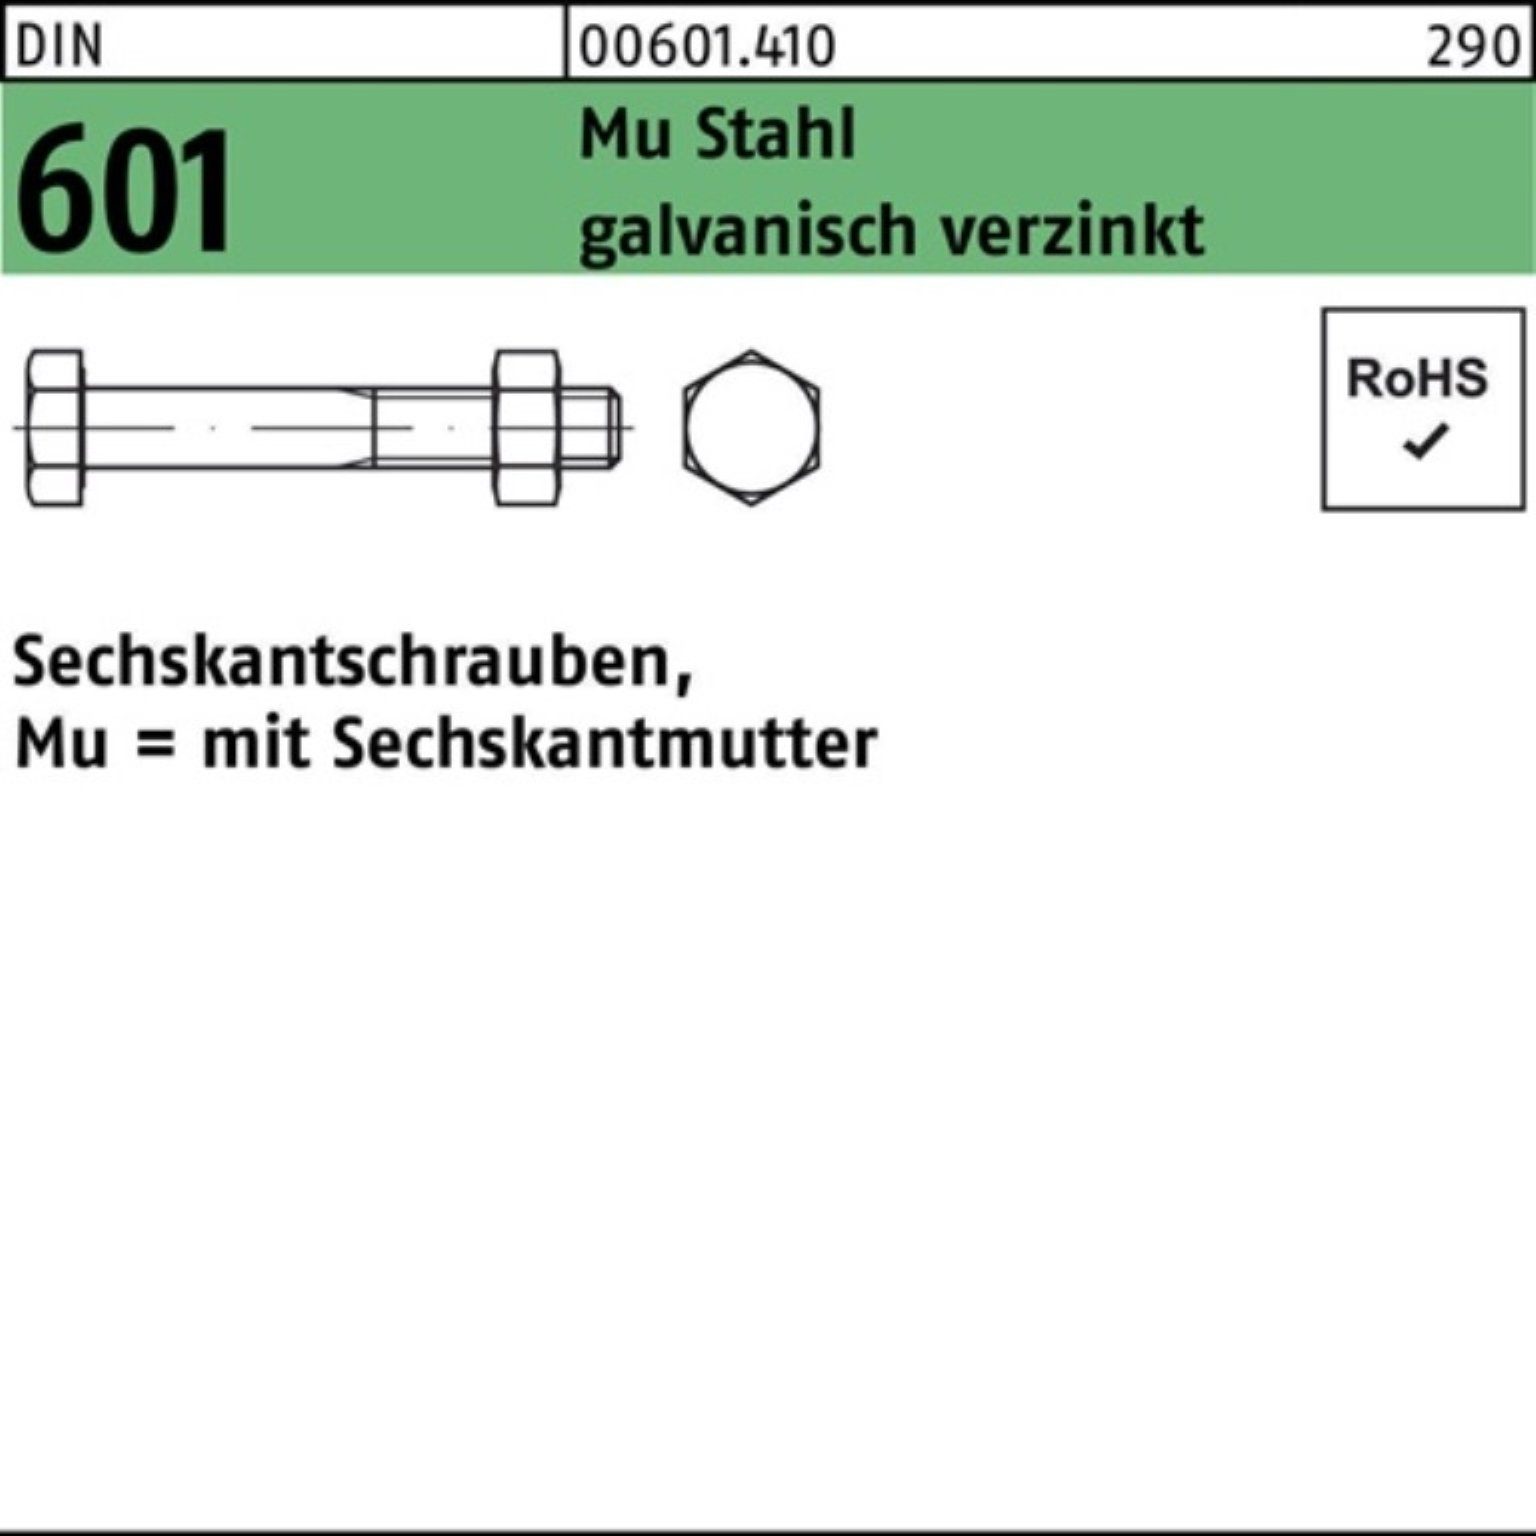 Reyher Sechskantmutter 200er Pack Sechskantschraube DIN 601 Sechskantmutter M8x80 Mu Stahl 4.